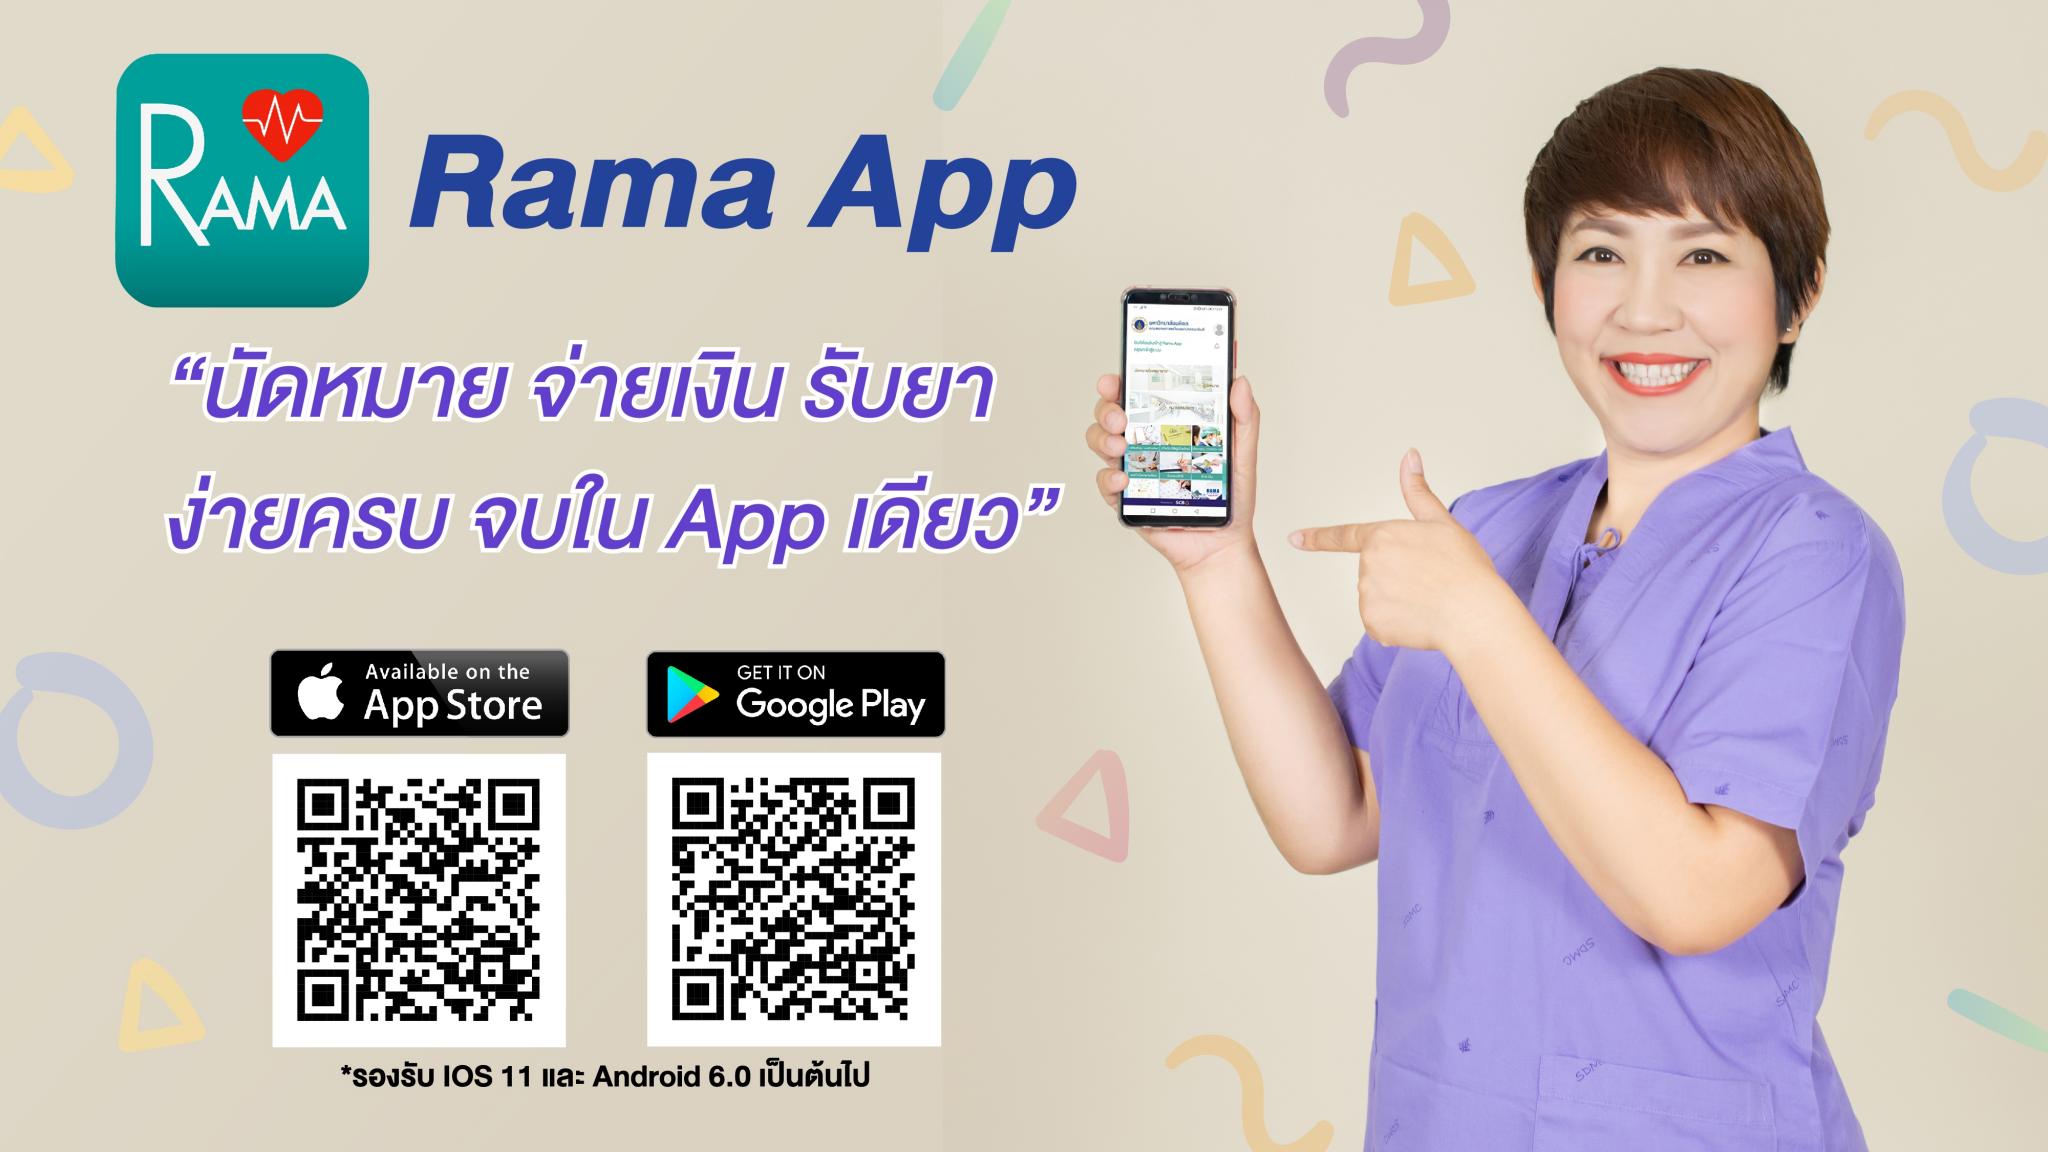 Rama App นัดหมาย จ่ายเงิน รับยา ง่ายครบ จบใน App เดียว